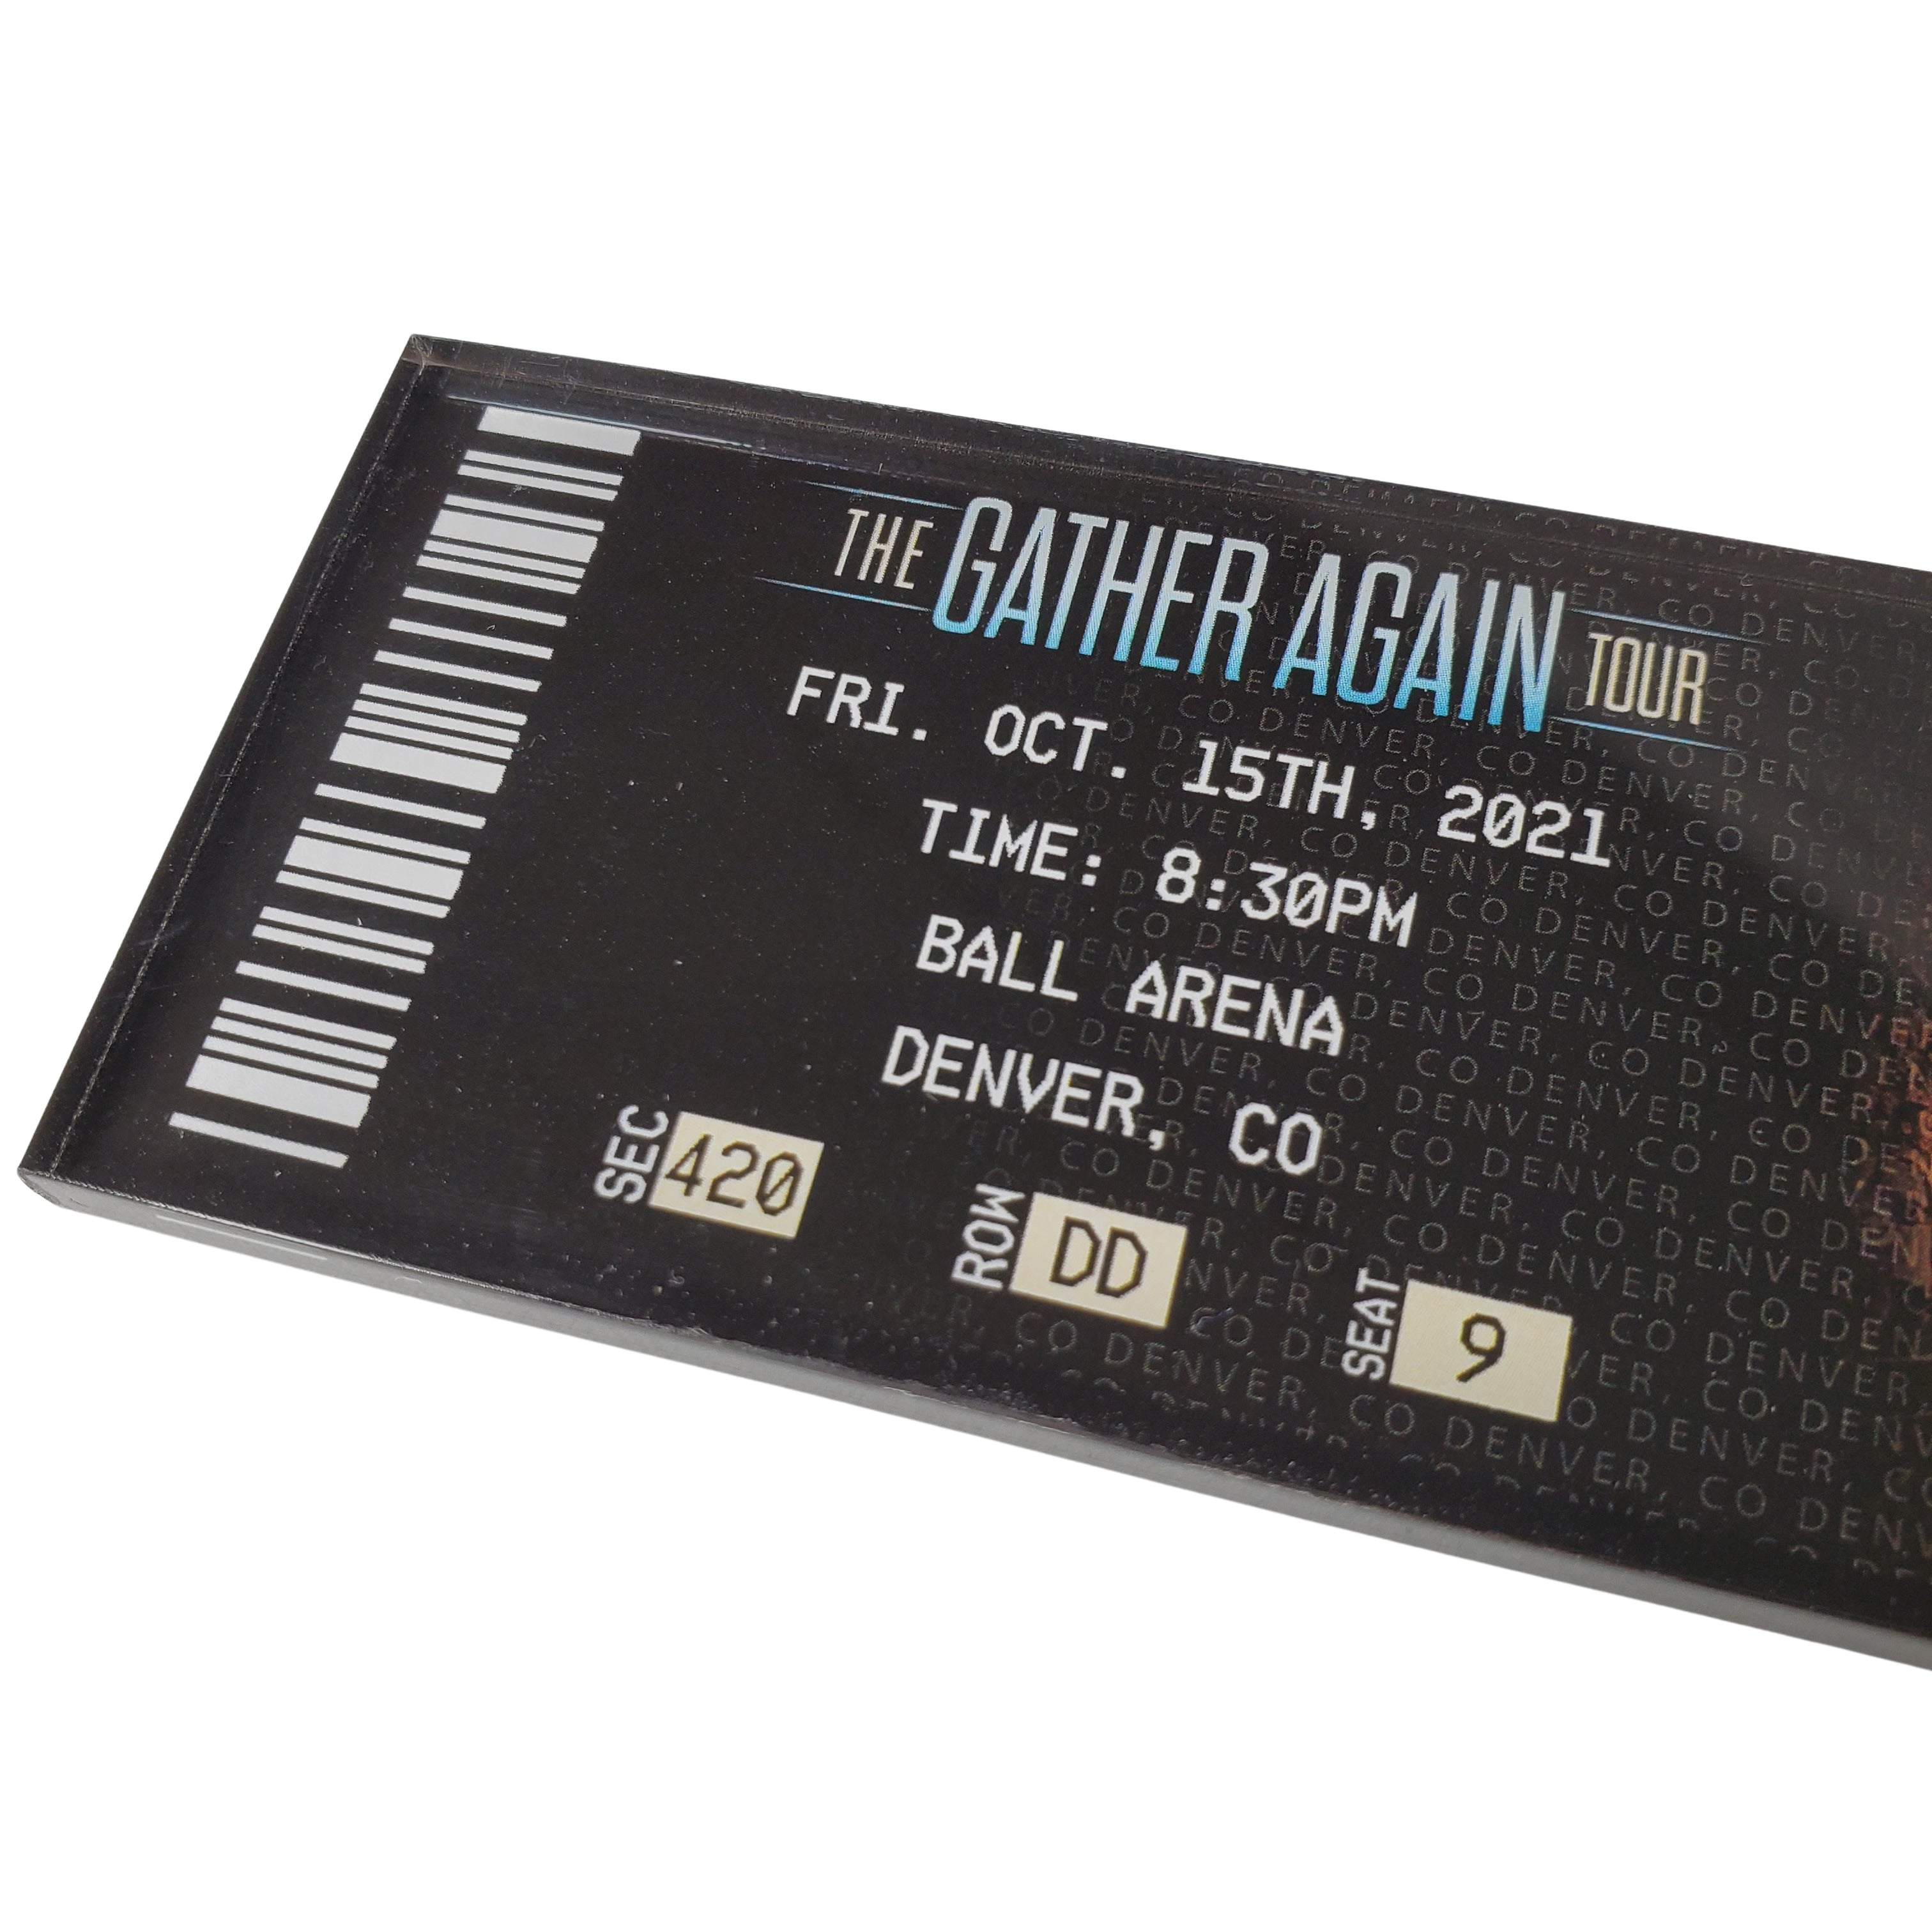 Gather Again Tour Ticket Magnet - Denver, CO